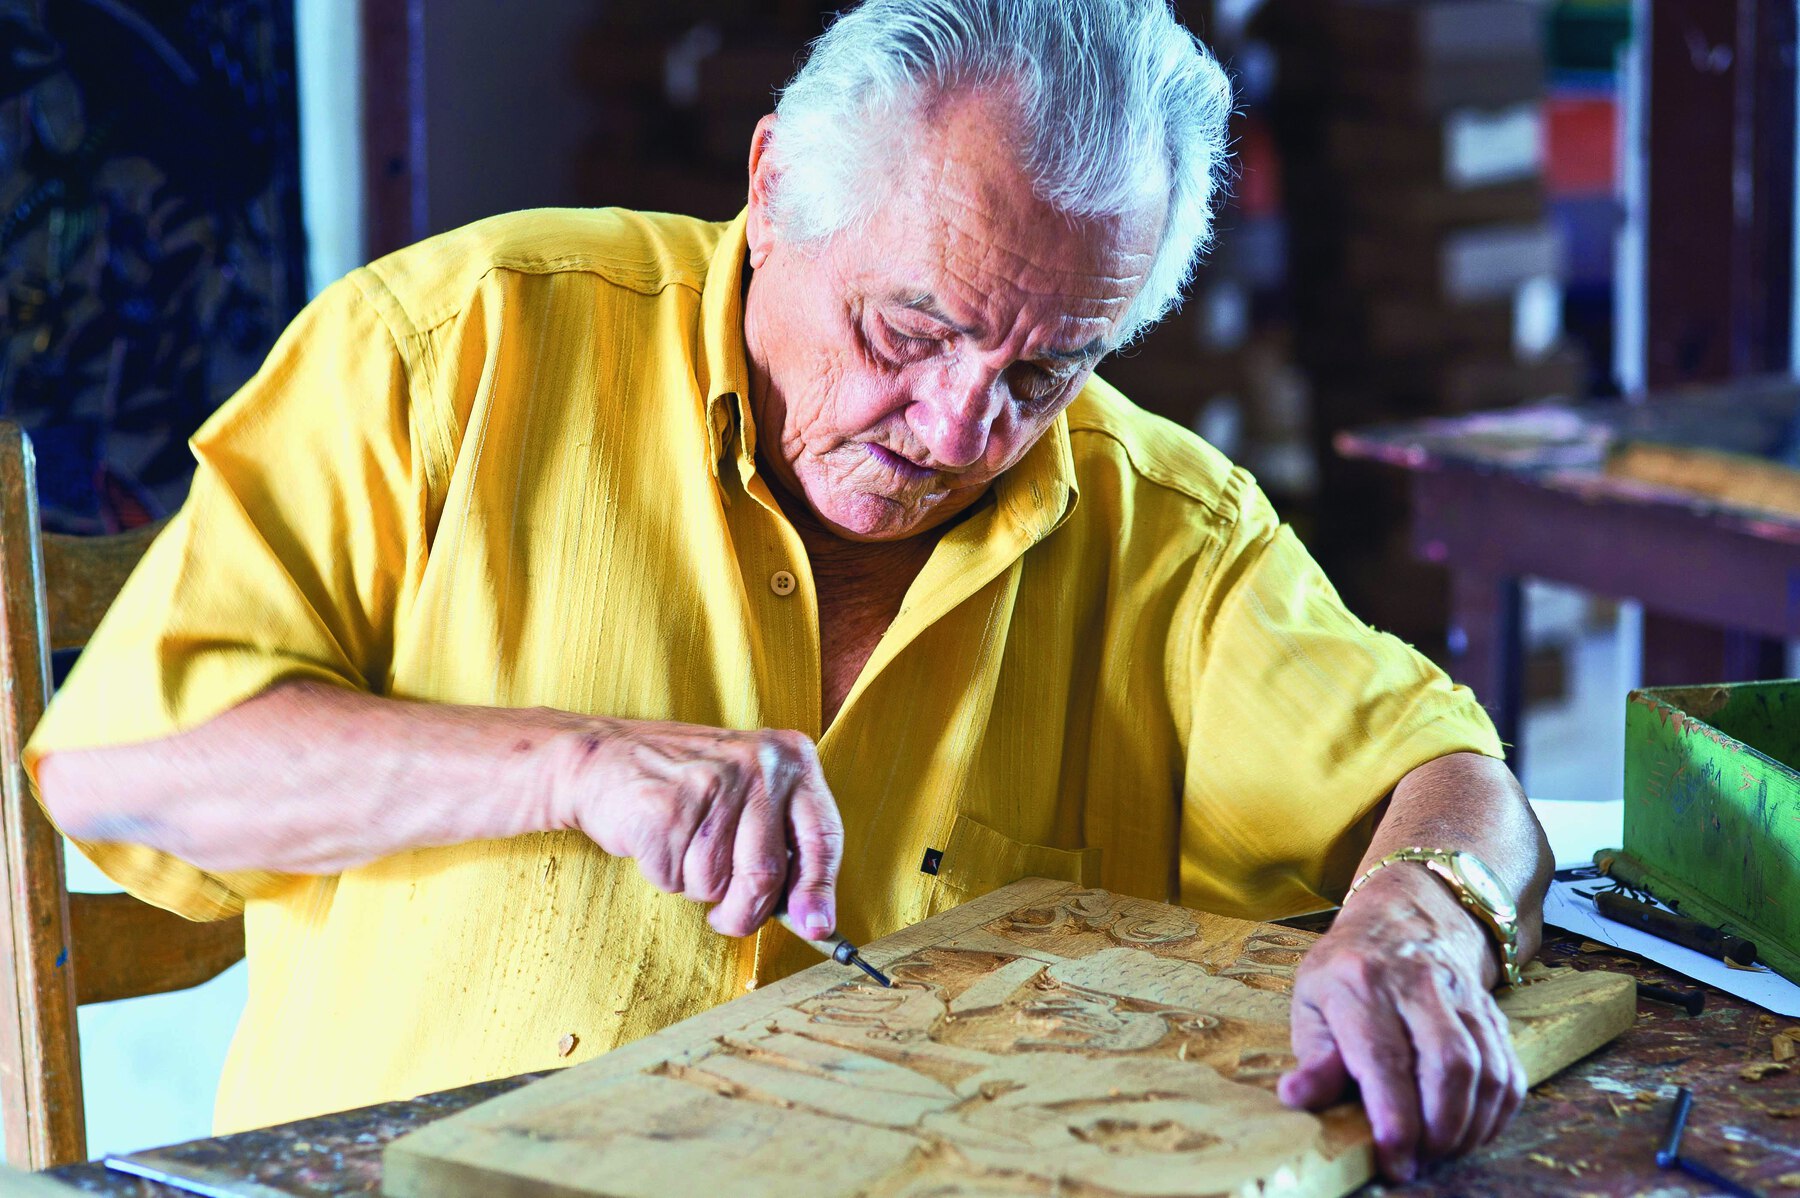 Fotografia. Homem idoso, de cabelo grisalho curto, vestindo camisa amarela. Com a mão direita, ele utiliza um formão para fazer entalhes em uma placa de madeira.